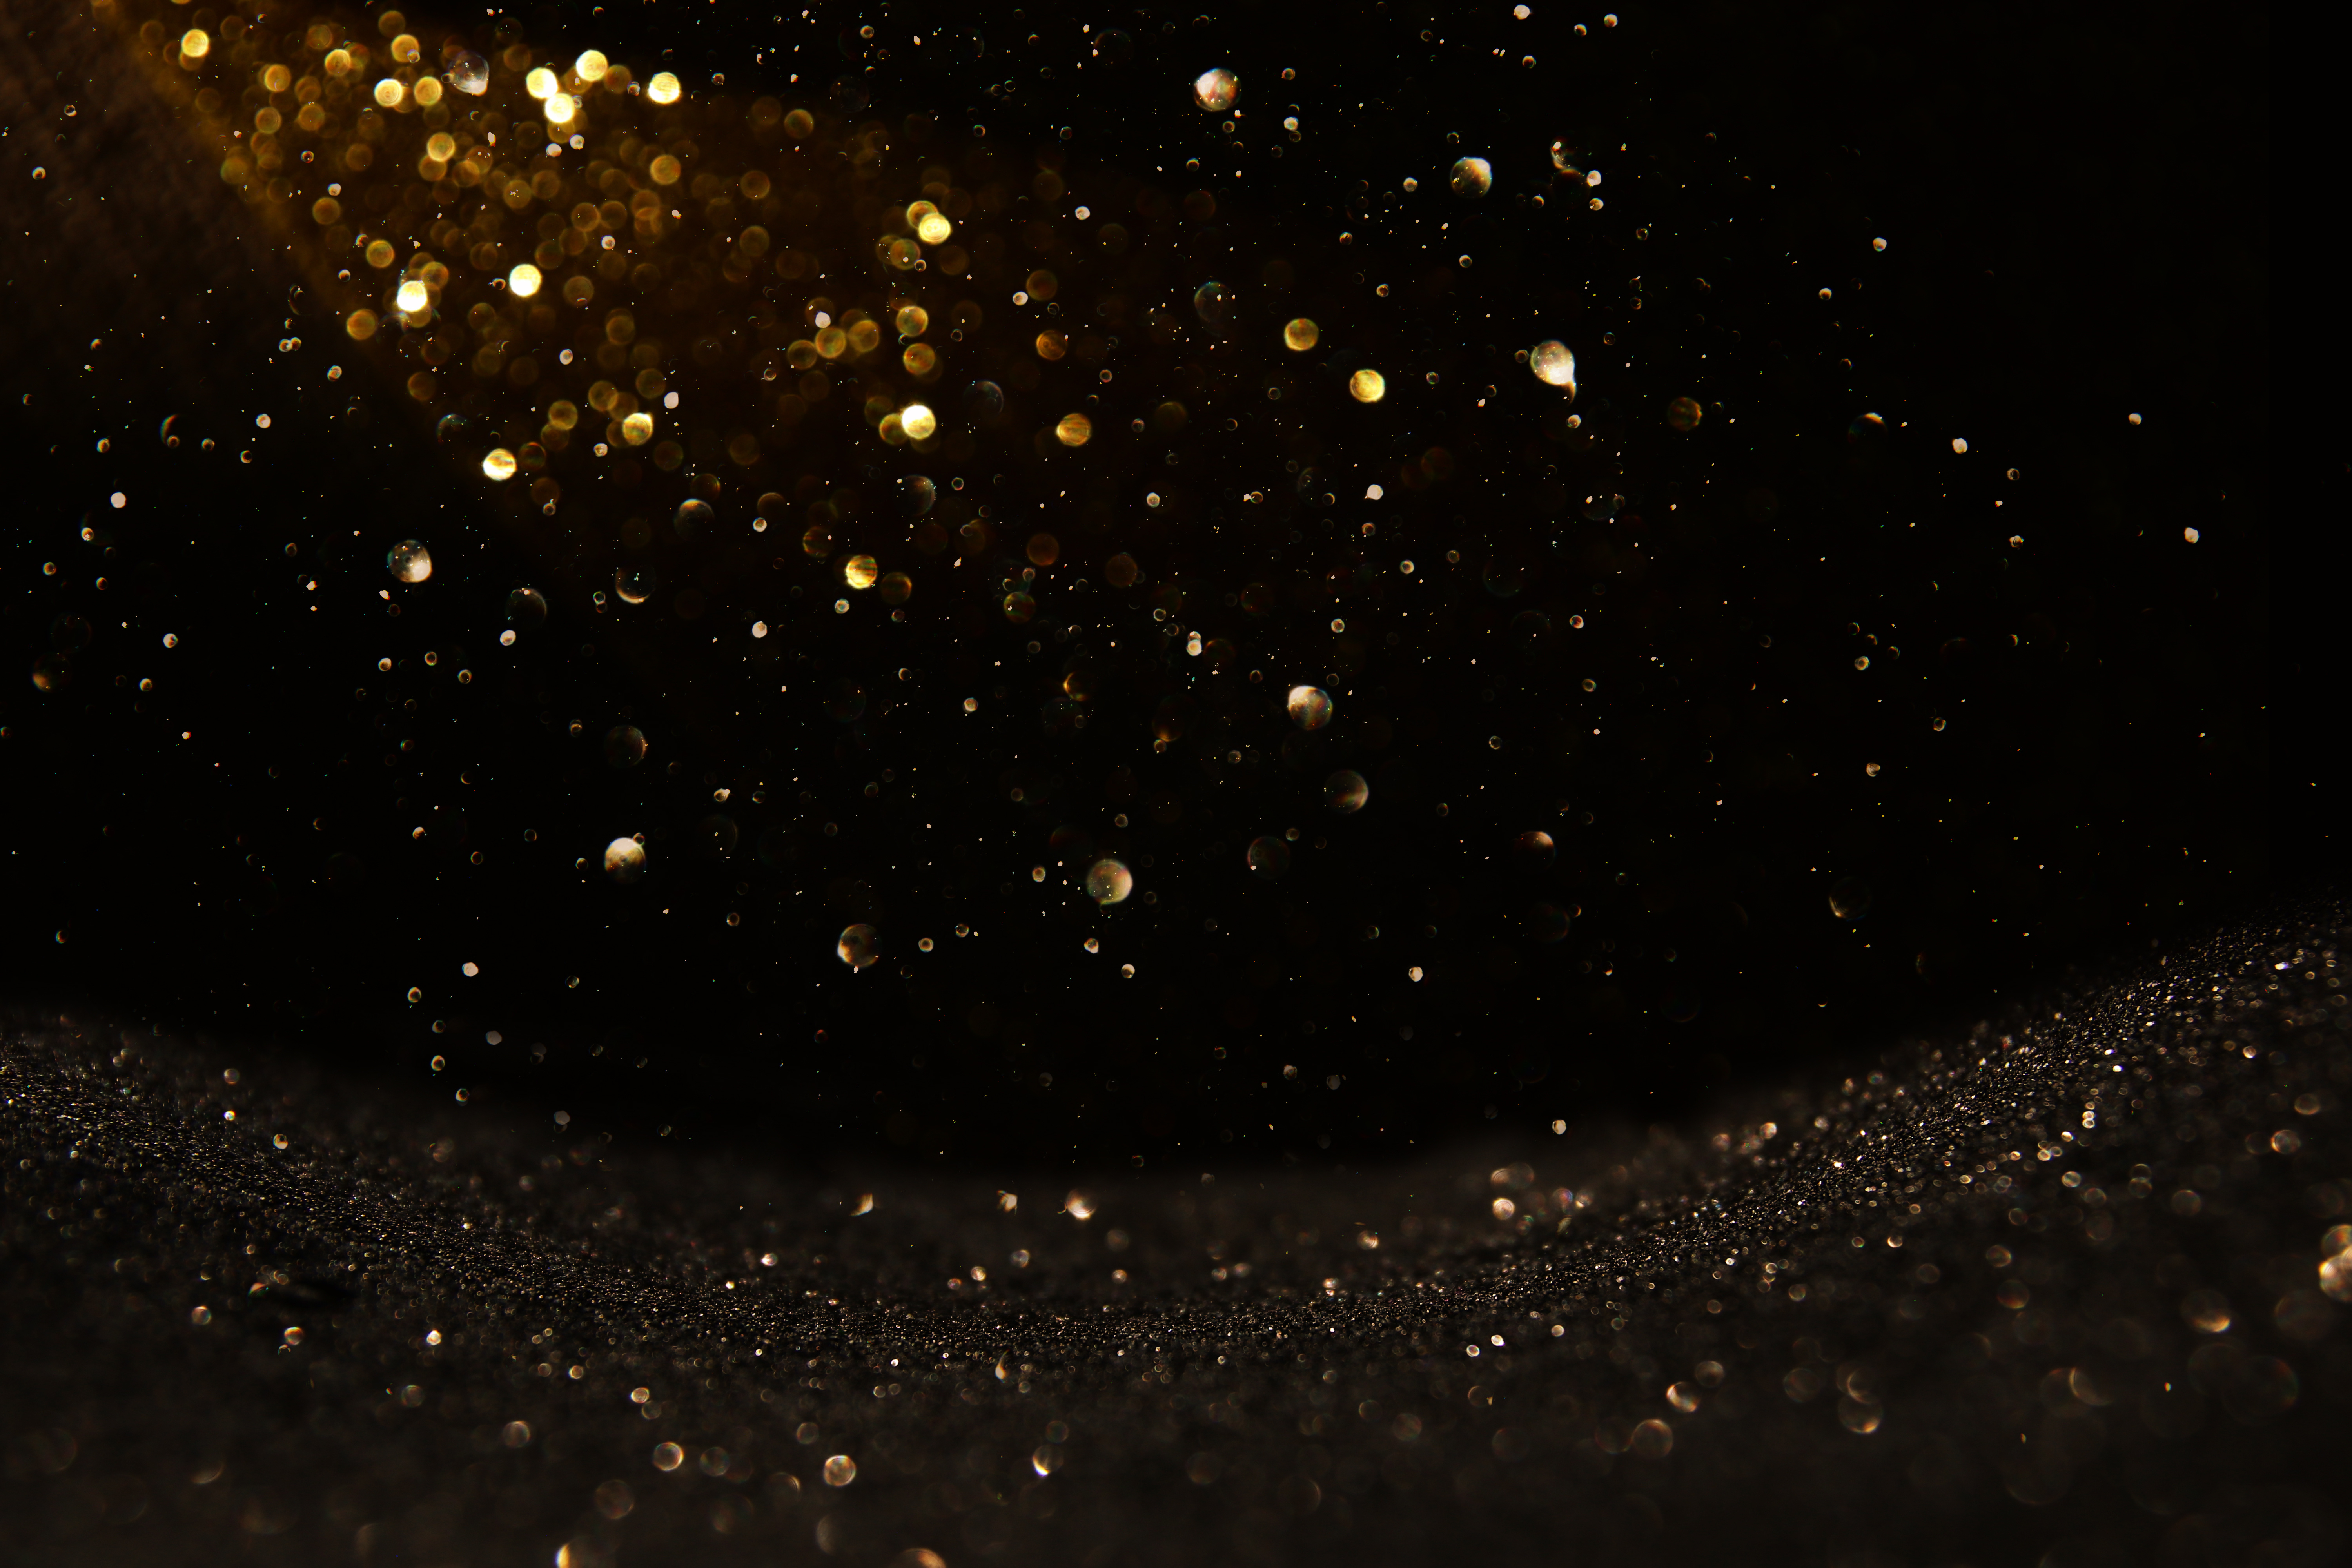 glitter vintage lights background. black and gold. de-focused.